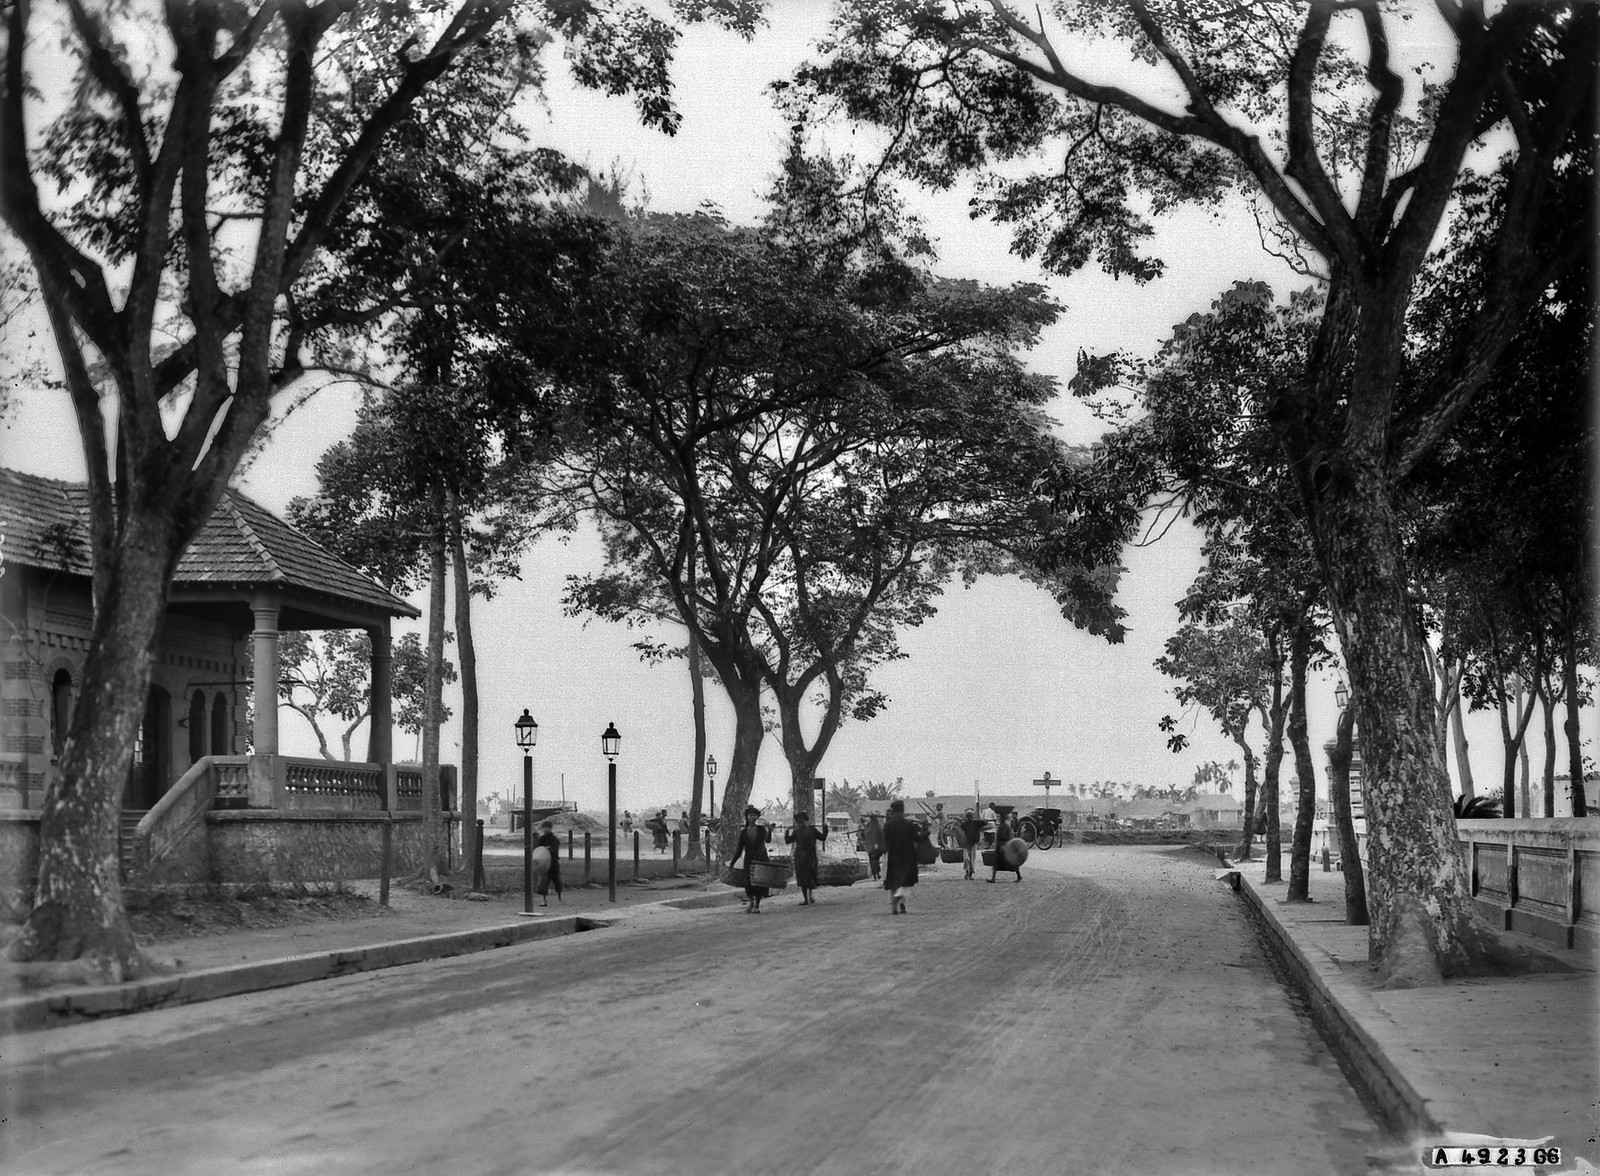 Khung cảnh đường phố ở thị xã Thái Bình năm 1928.